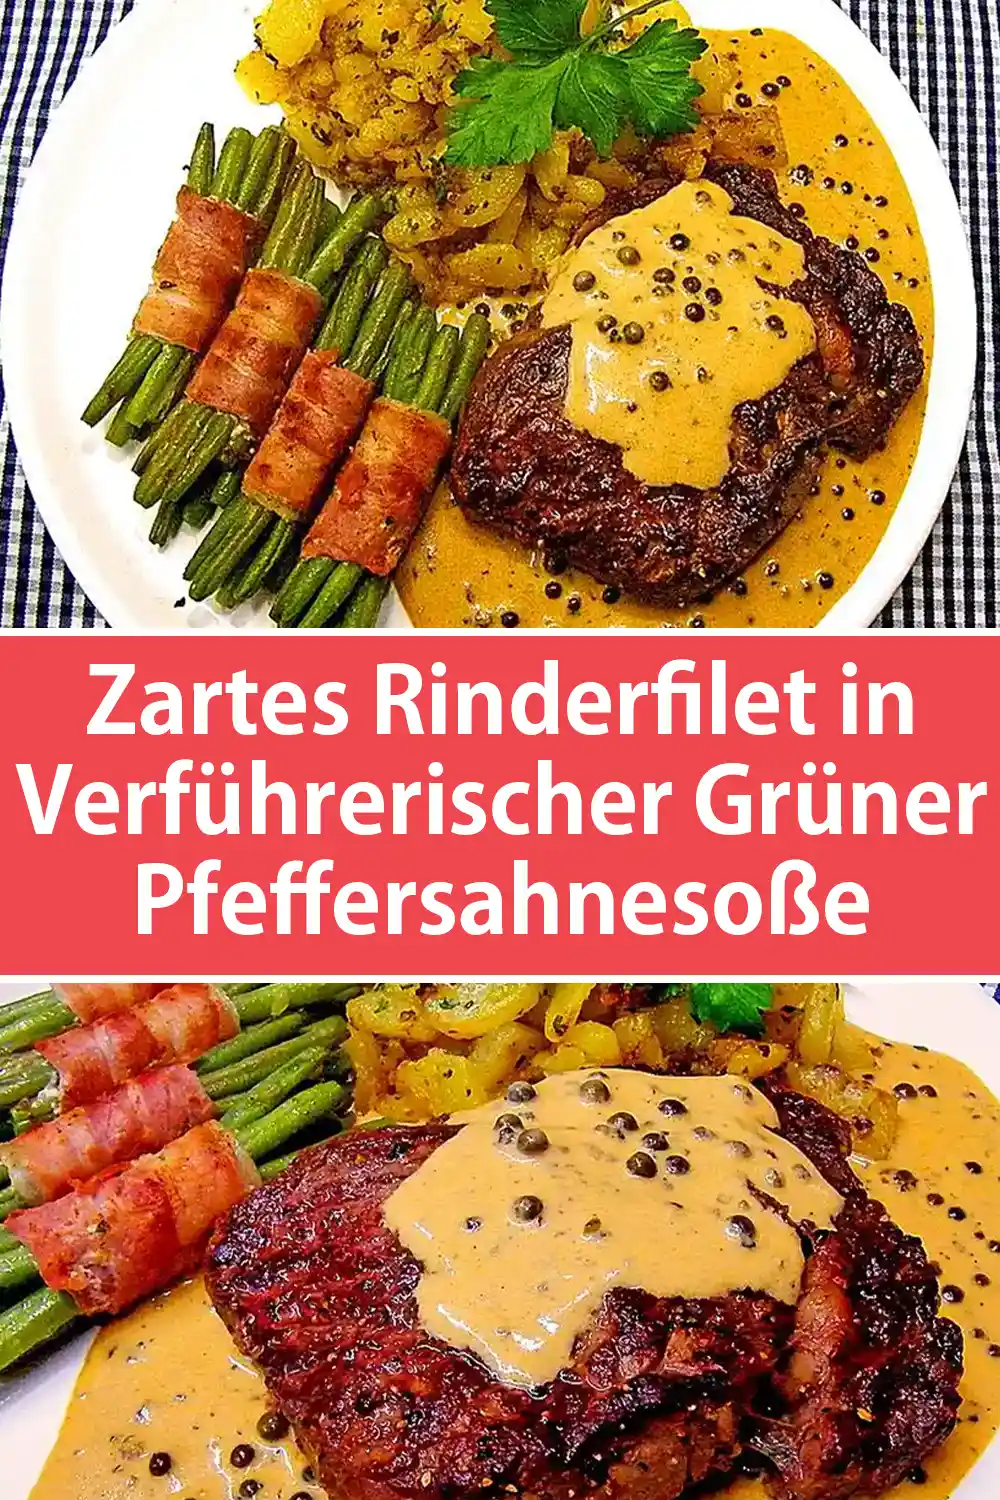 Zartes Rinderfilet in Verführerischer Grüner Pfeffersahnesoße Rezept